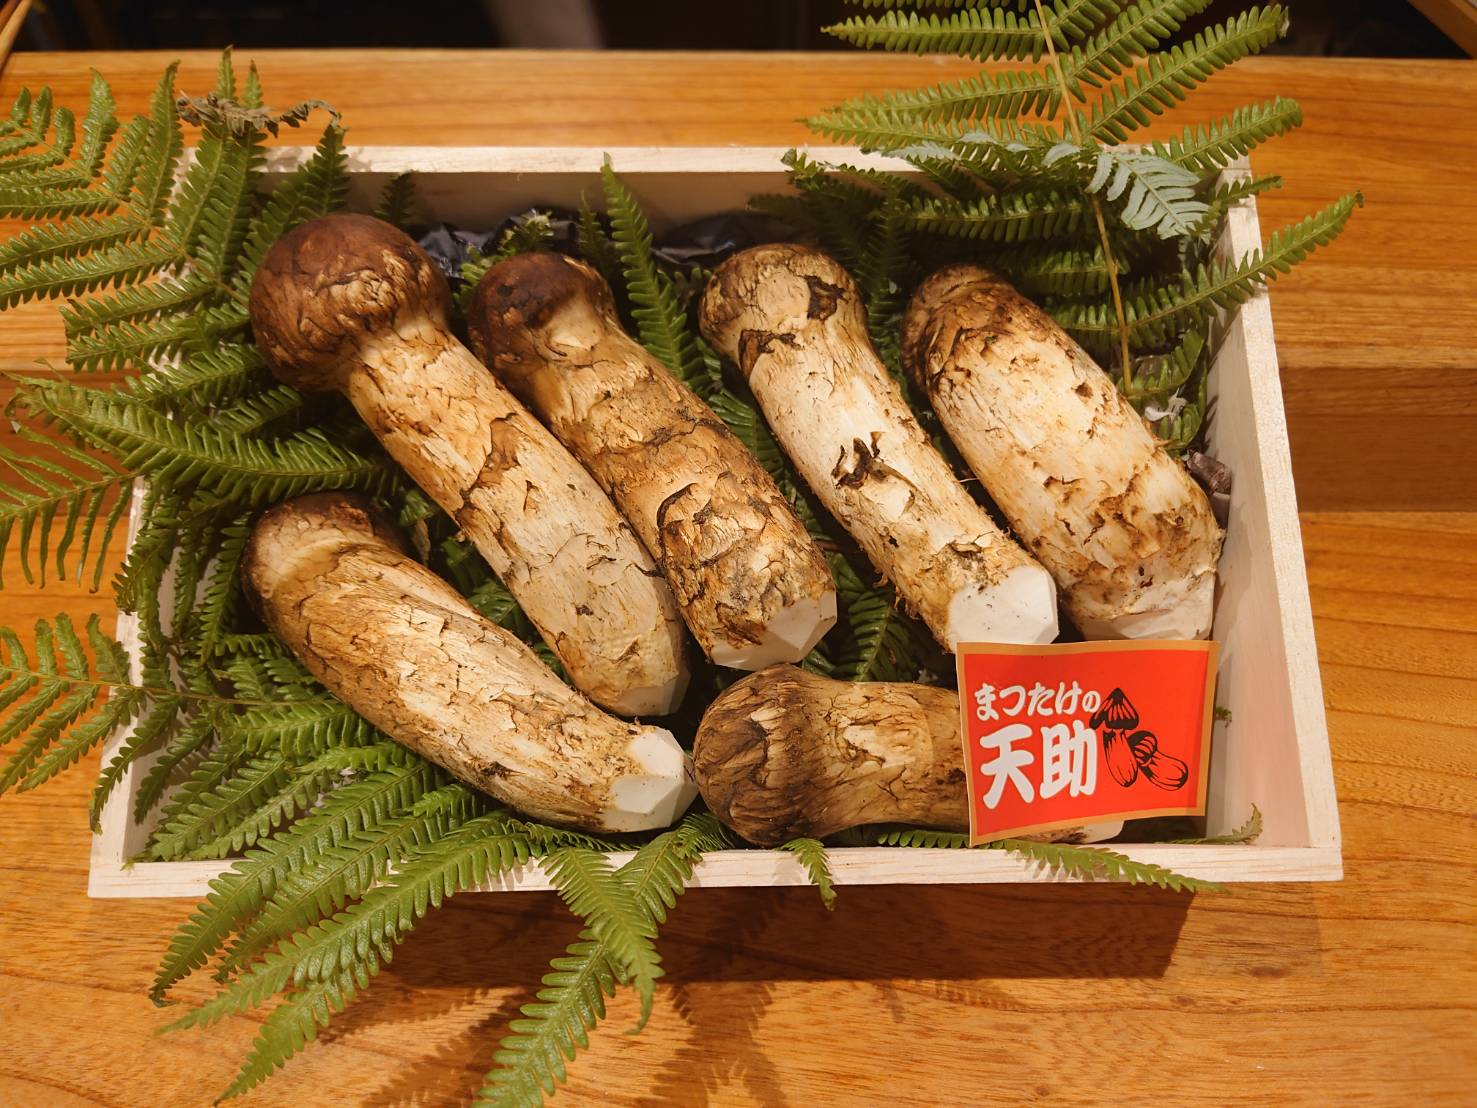 【日本料理みつわ】松茸<p>岩手県産 松茸が入荷しております。 シーズン前の松茸は大変希少です。 香り高い上質なものが揃っております。 数に限りがございますので、 お早めにお越しくださいませ。</p>
